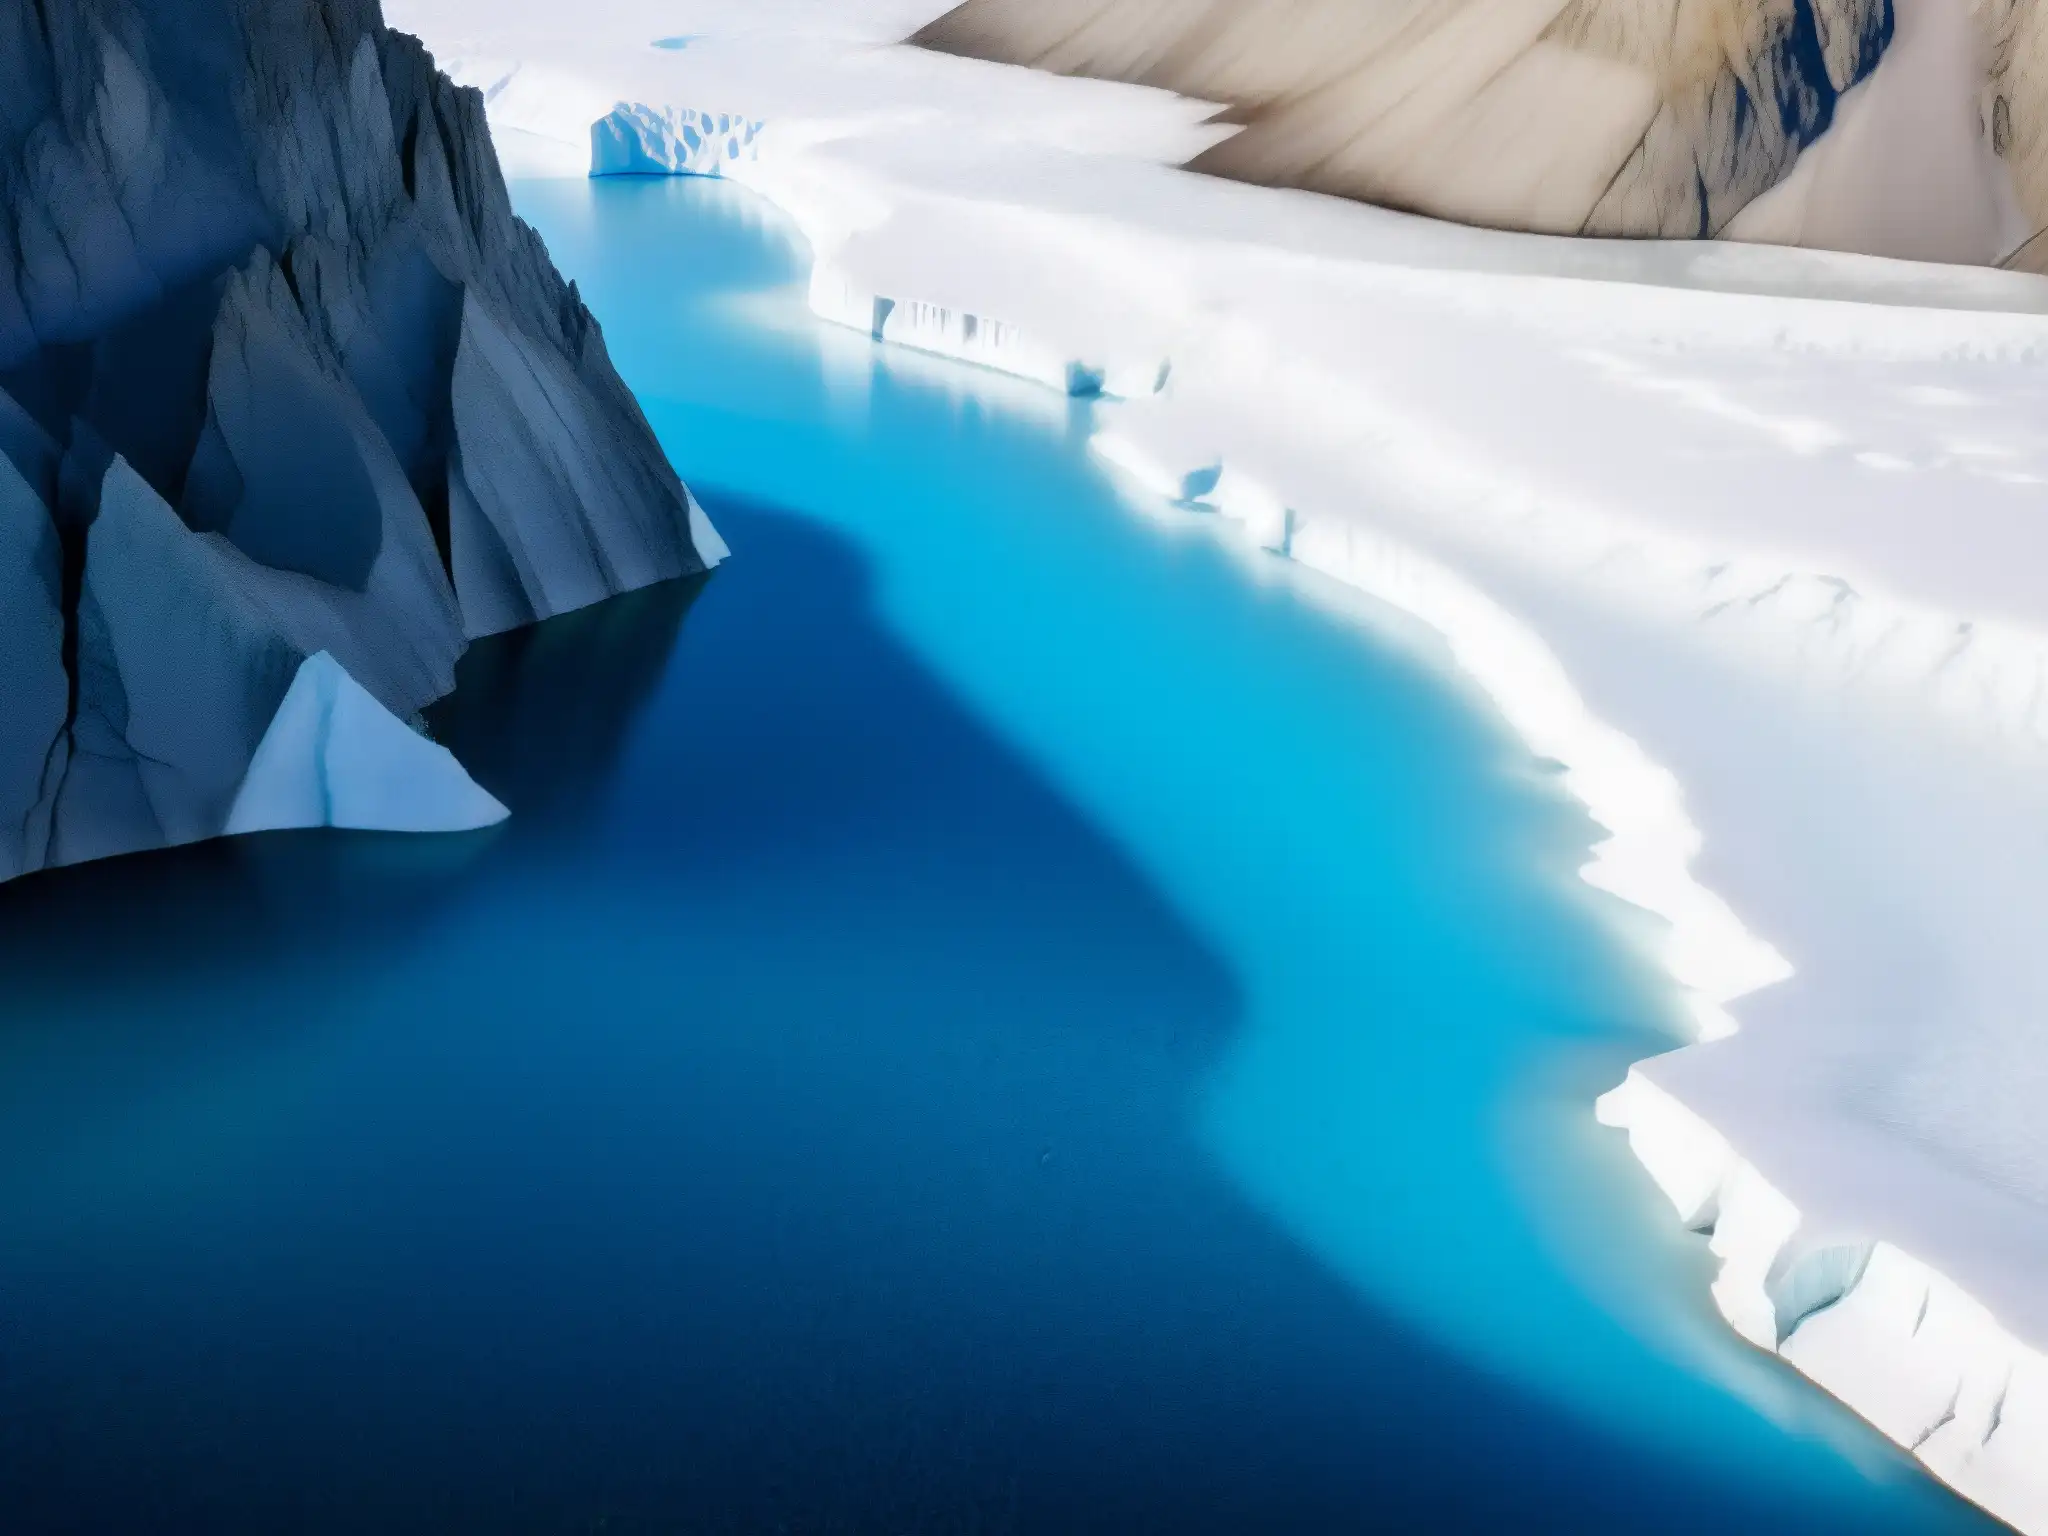 Un glaciar derretido revela la red de grietas y pozas de agua, con la luz del sol filtrándose a través del hielo